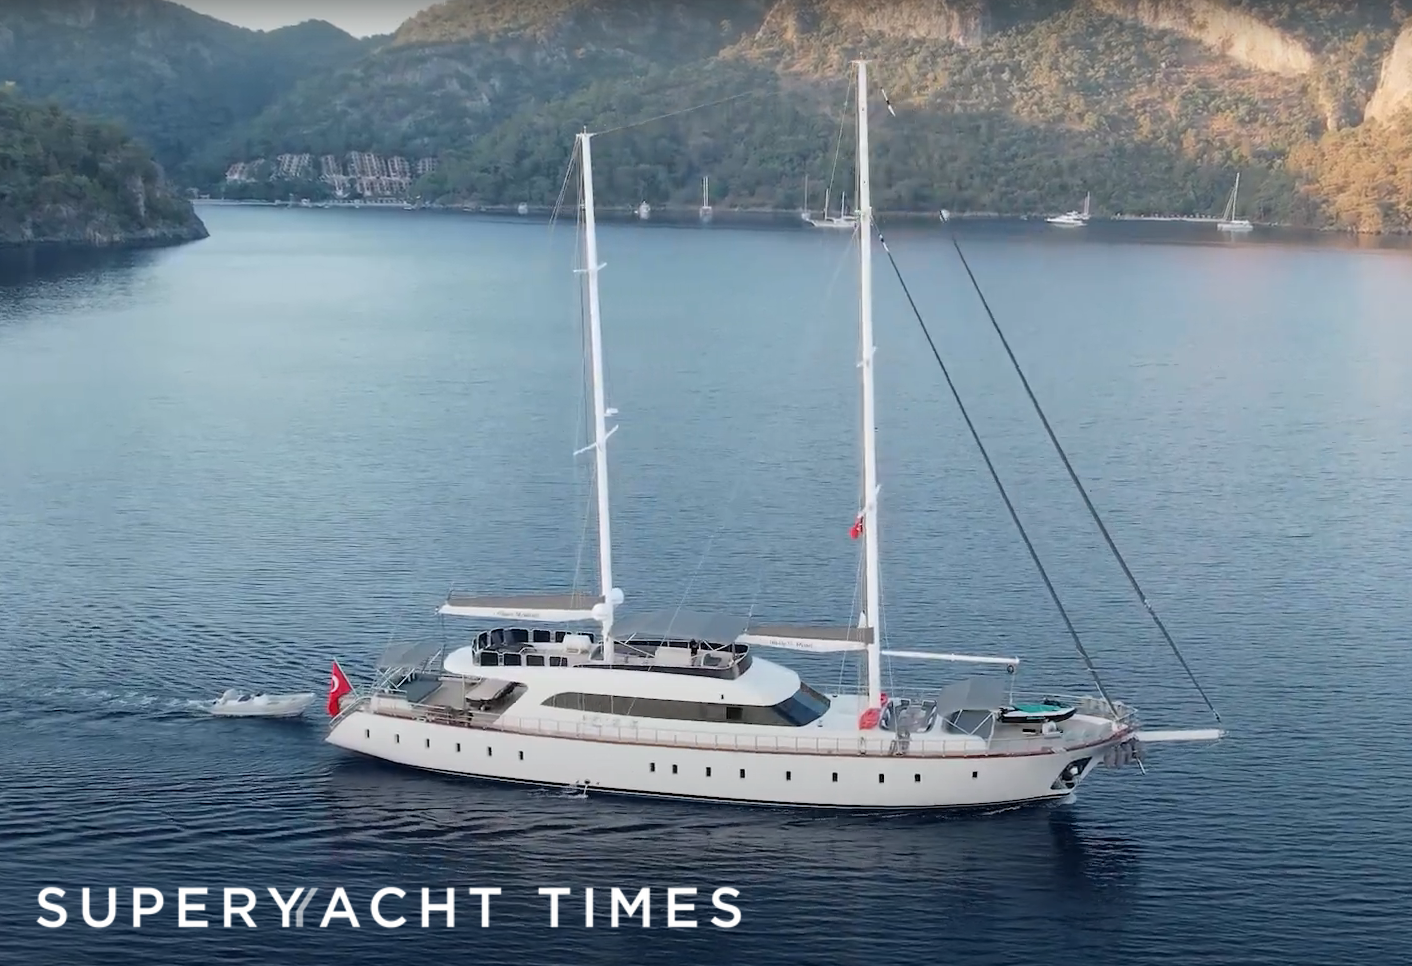 Queen of Makri gulet yacht in Turkey